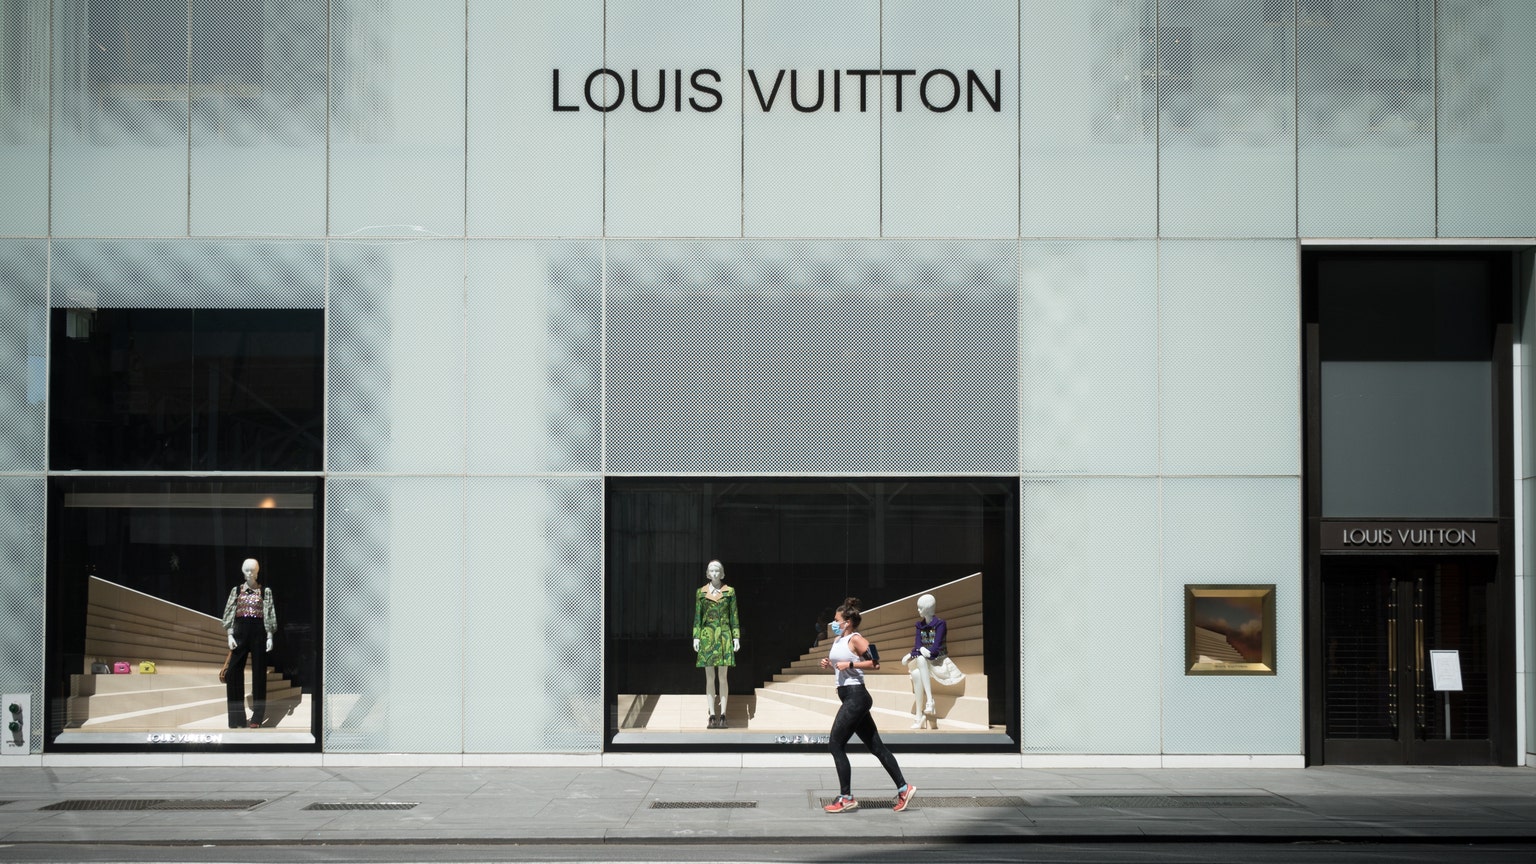 Moet Hennesy Louis Vuitton - LVMHF — Global Brands Matter